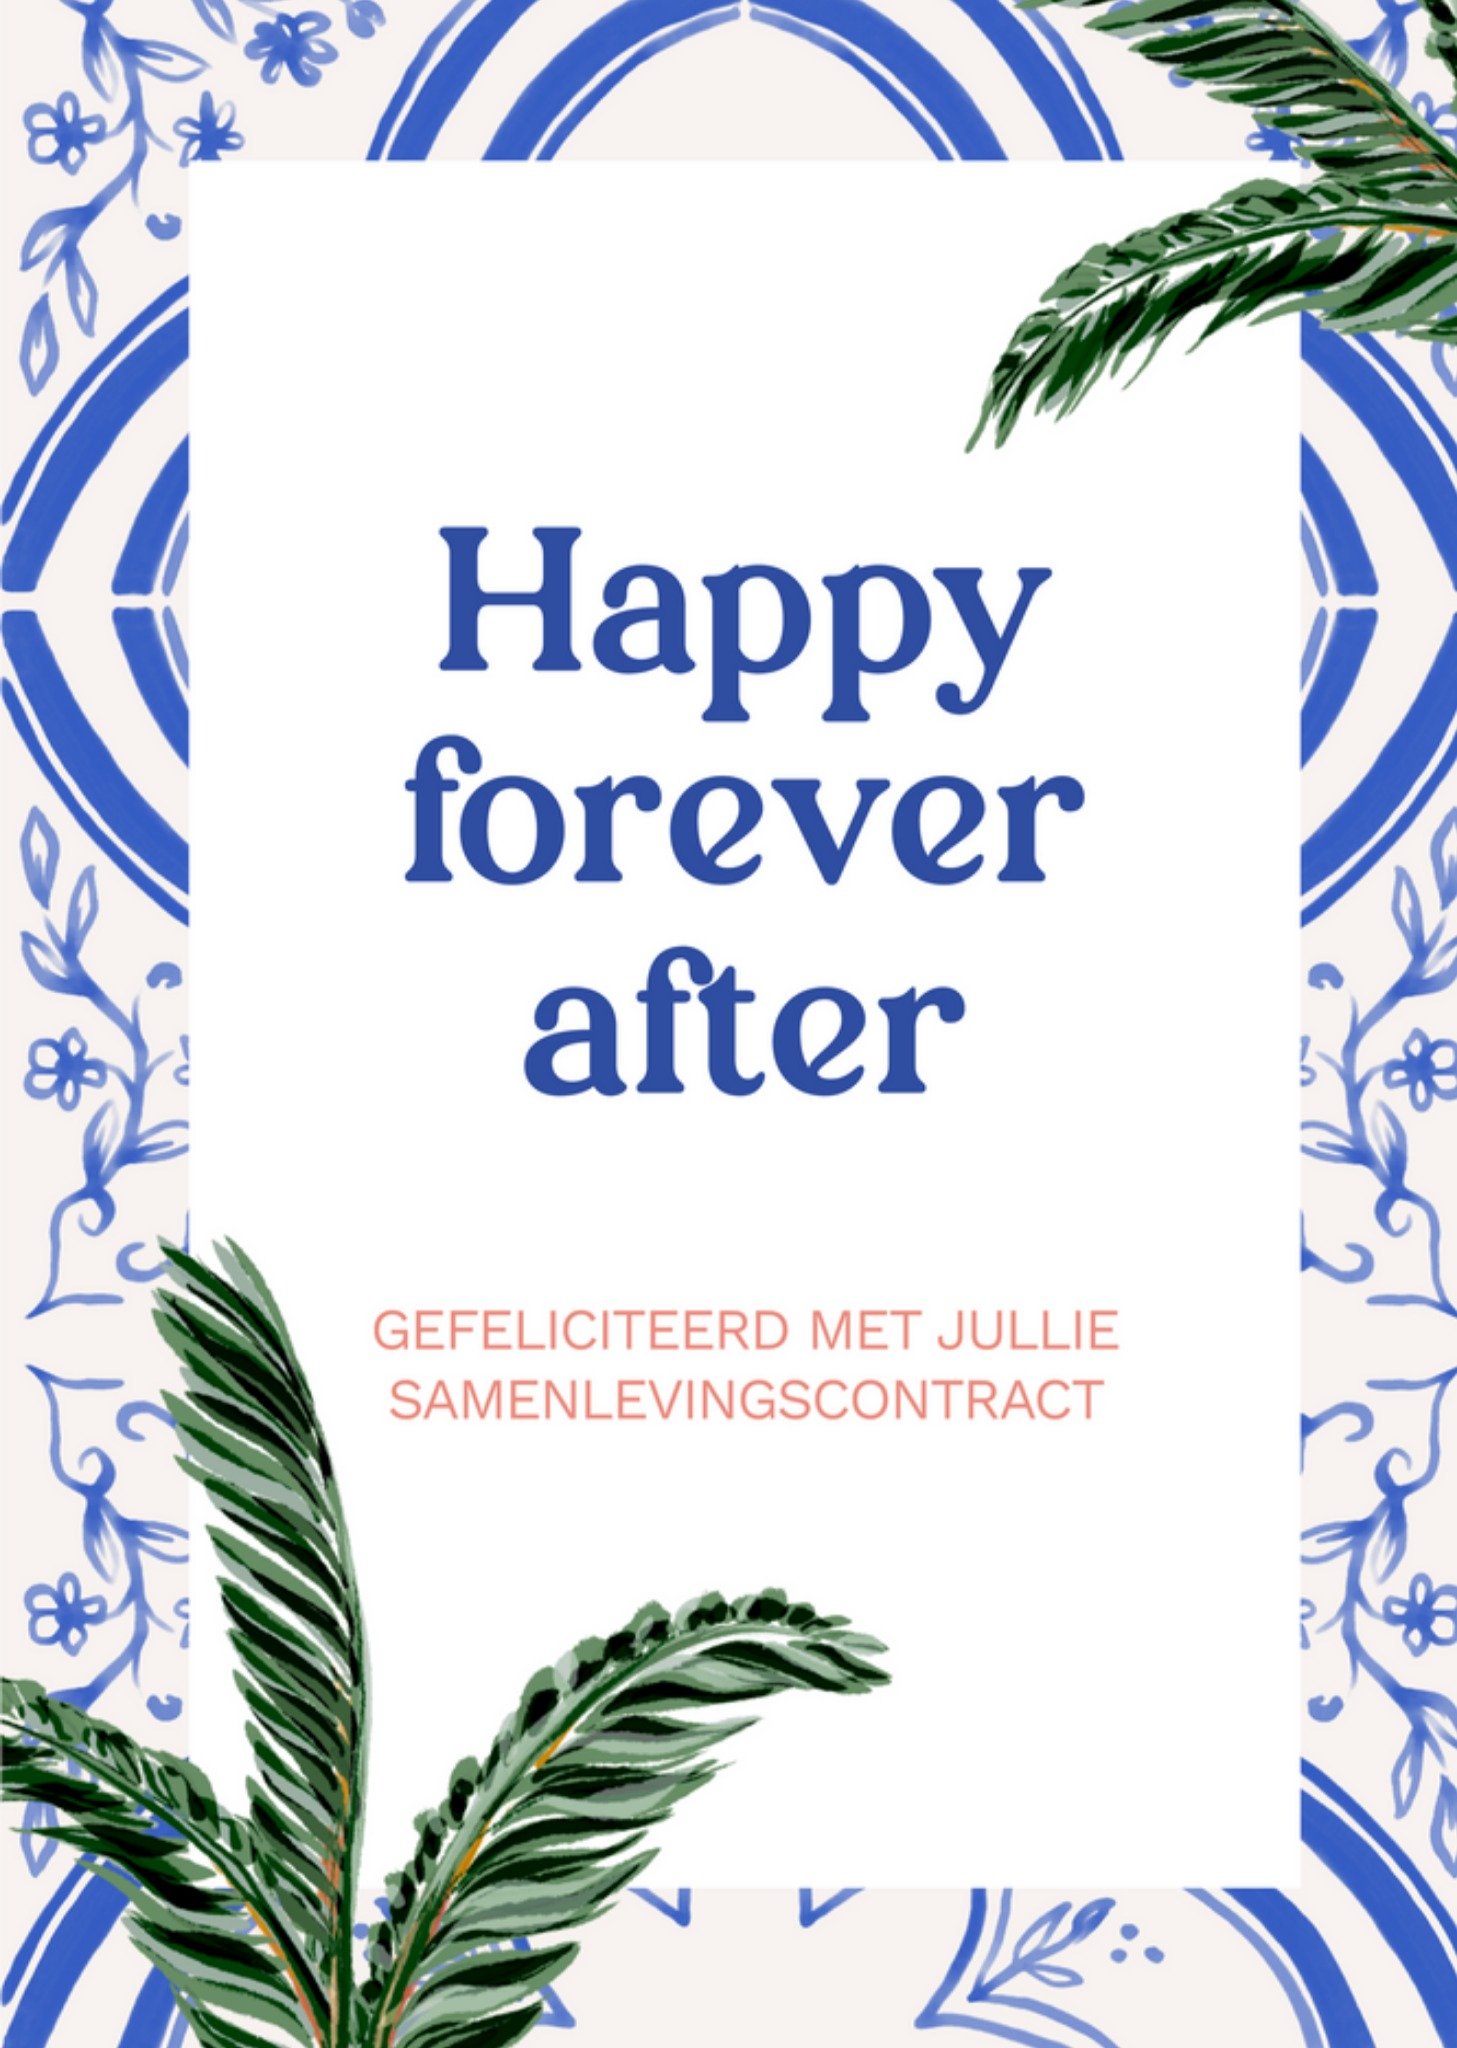 Huwelijkskaart - Samenlevingscontract - Happy forever after